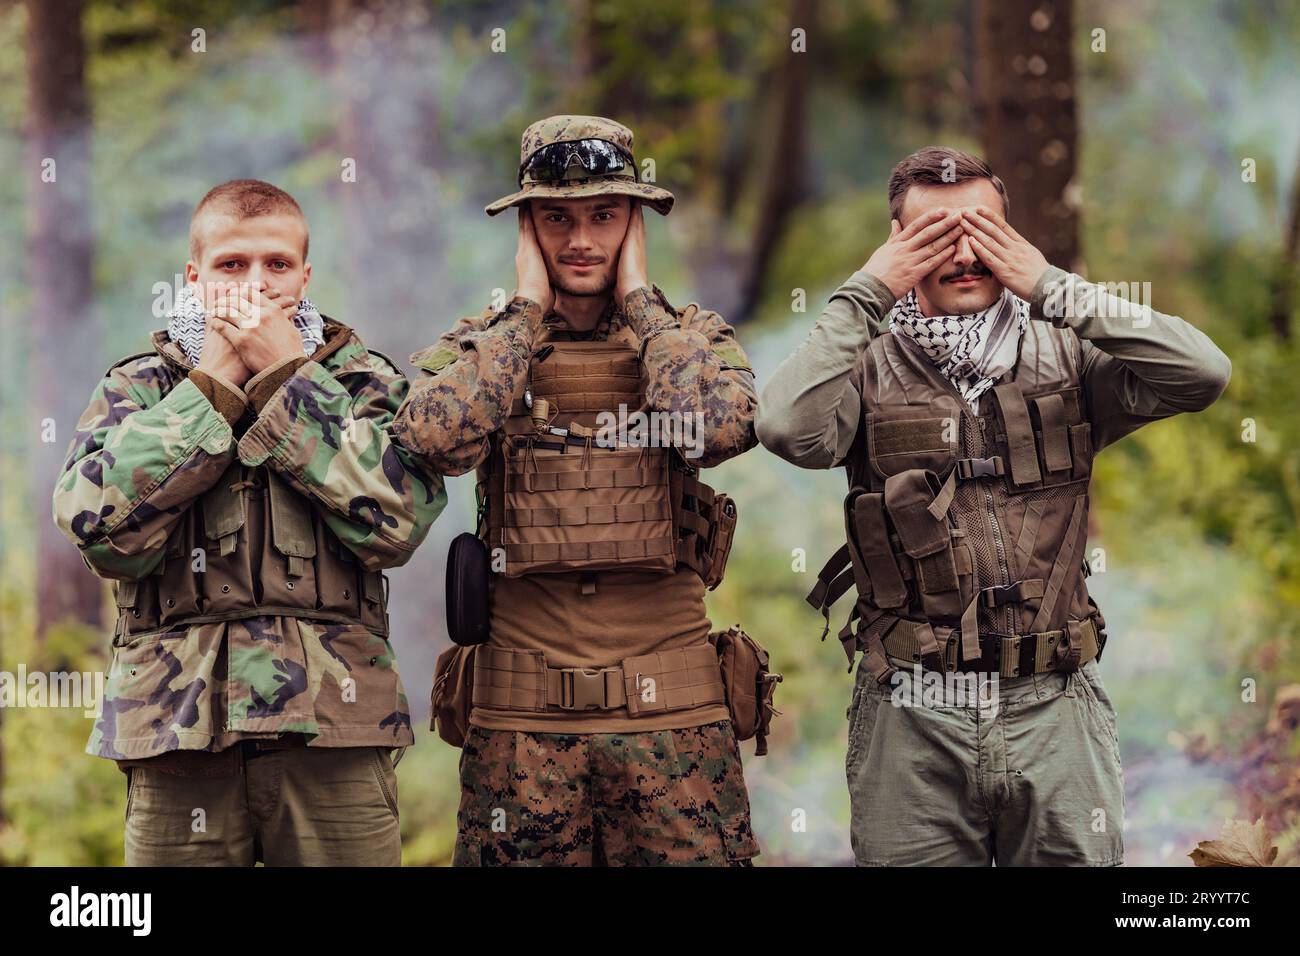 Groupe de soldats dans les camps oposit célébrant la paix après la bataille en montrant des symboles sourds et muets aveugles Banque D'Images